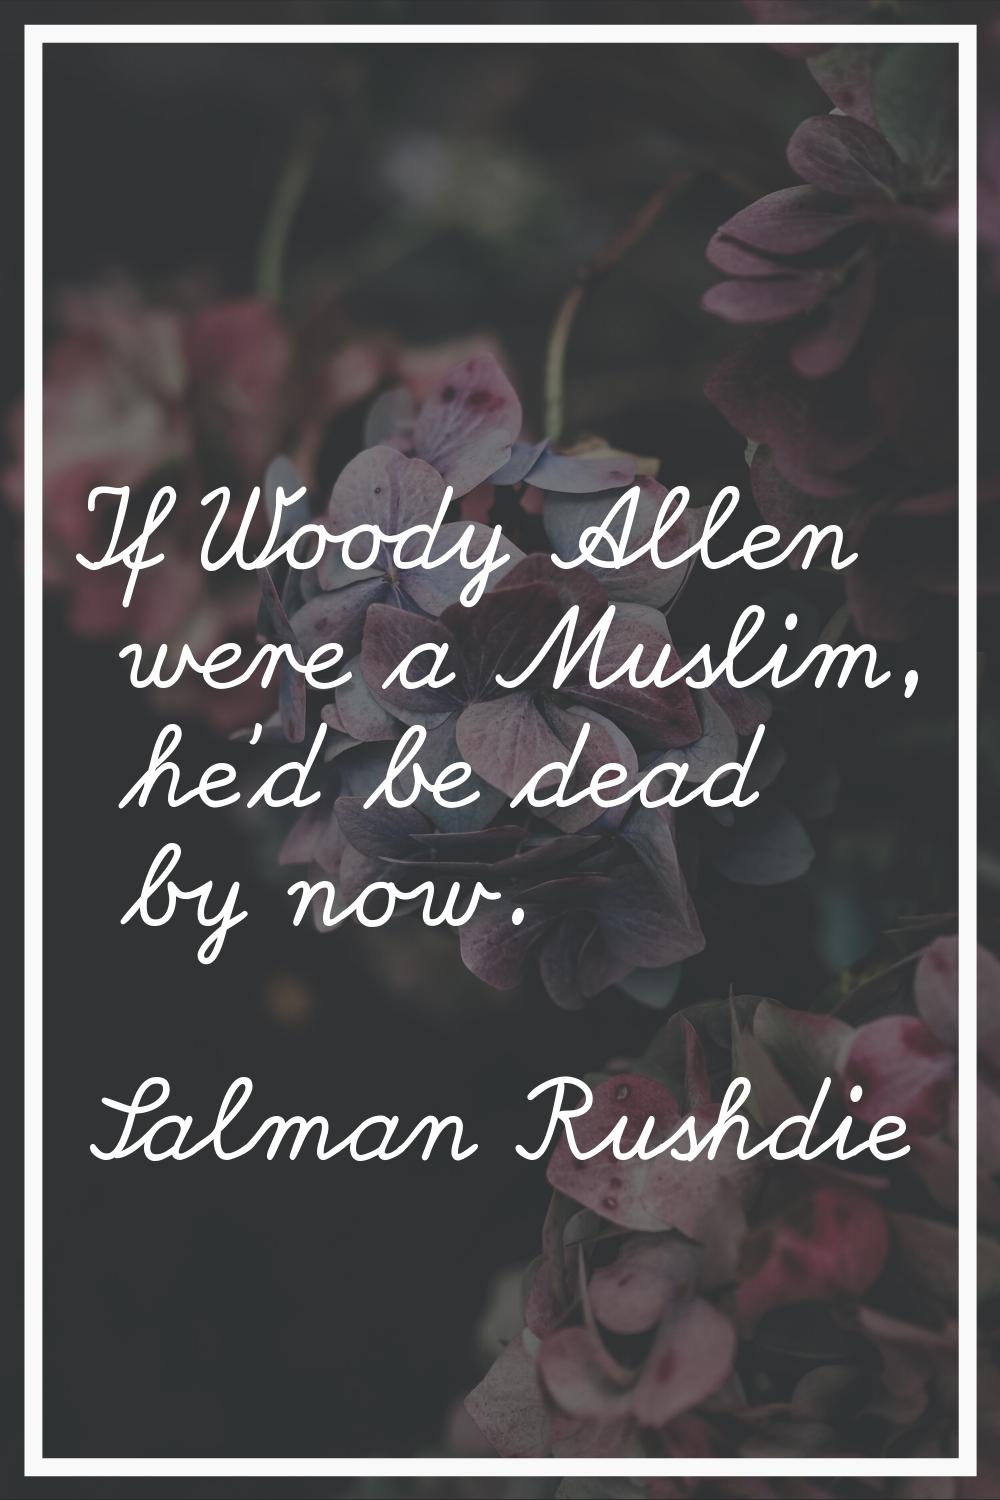 If Woody Allen were a Muslim, he'd be dead by now.